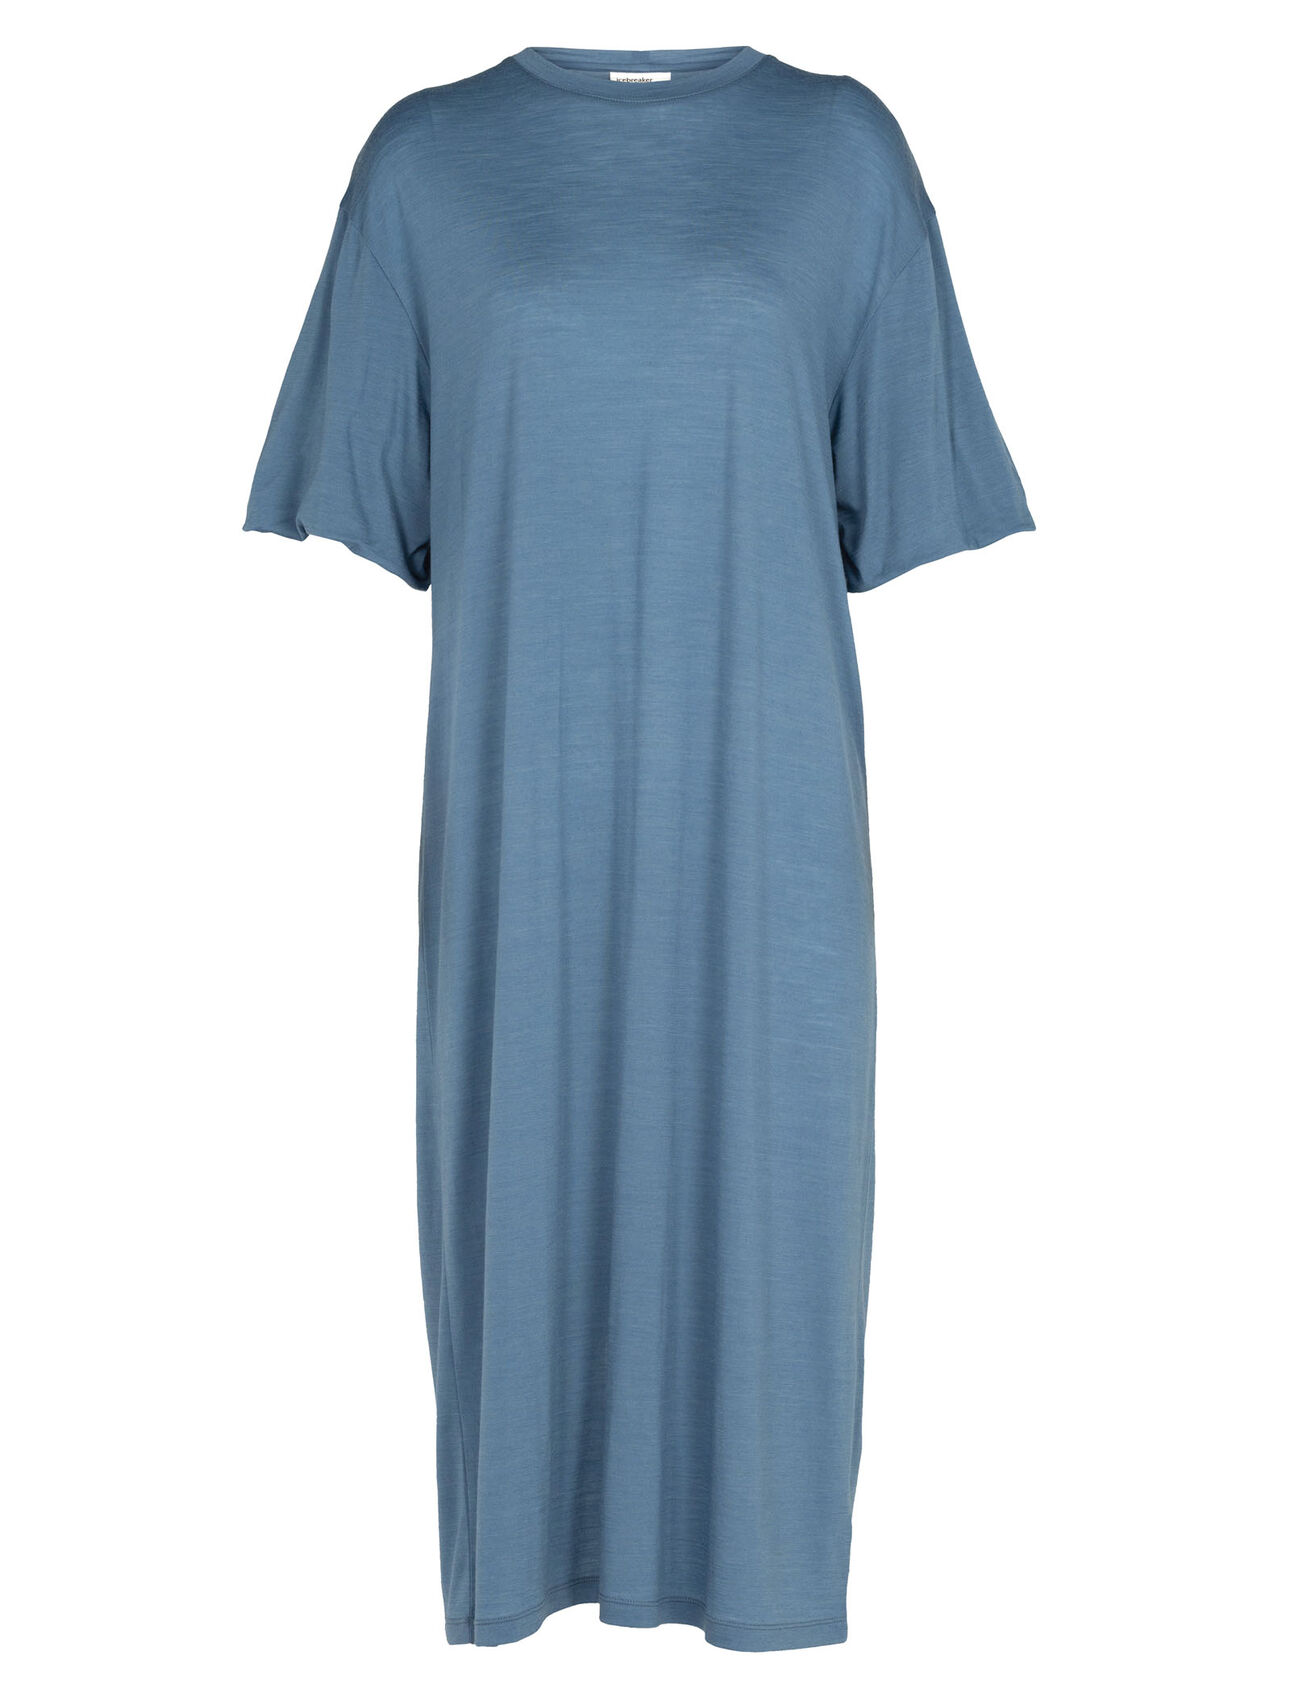 Cool-Lite™ jurk van merinowol